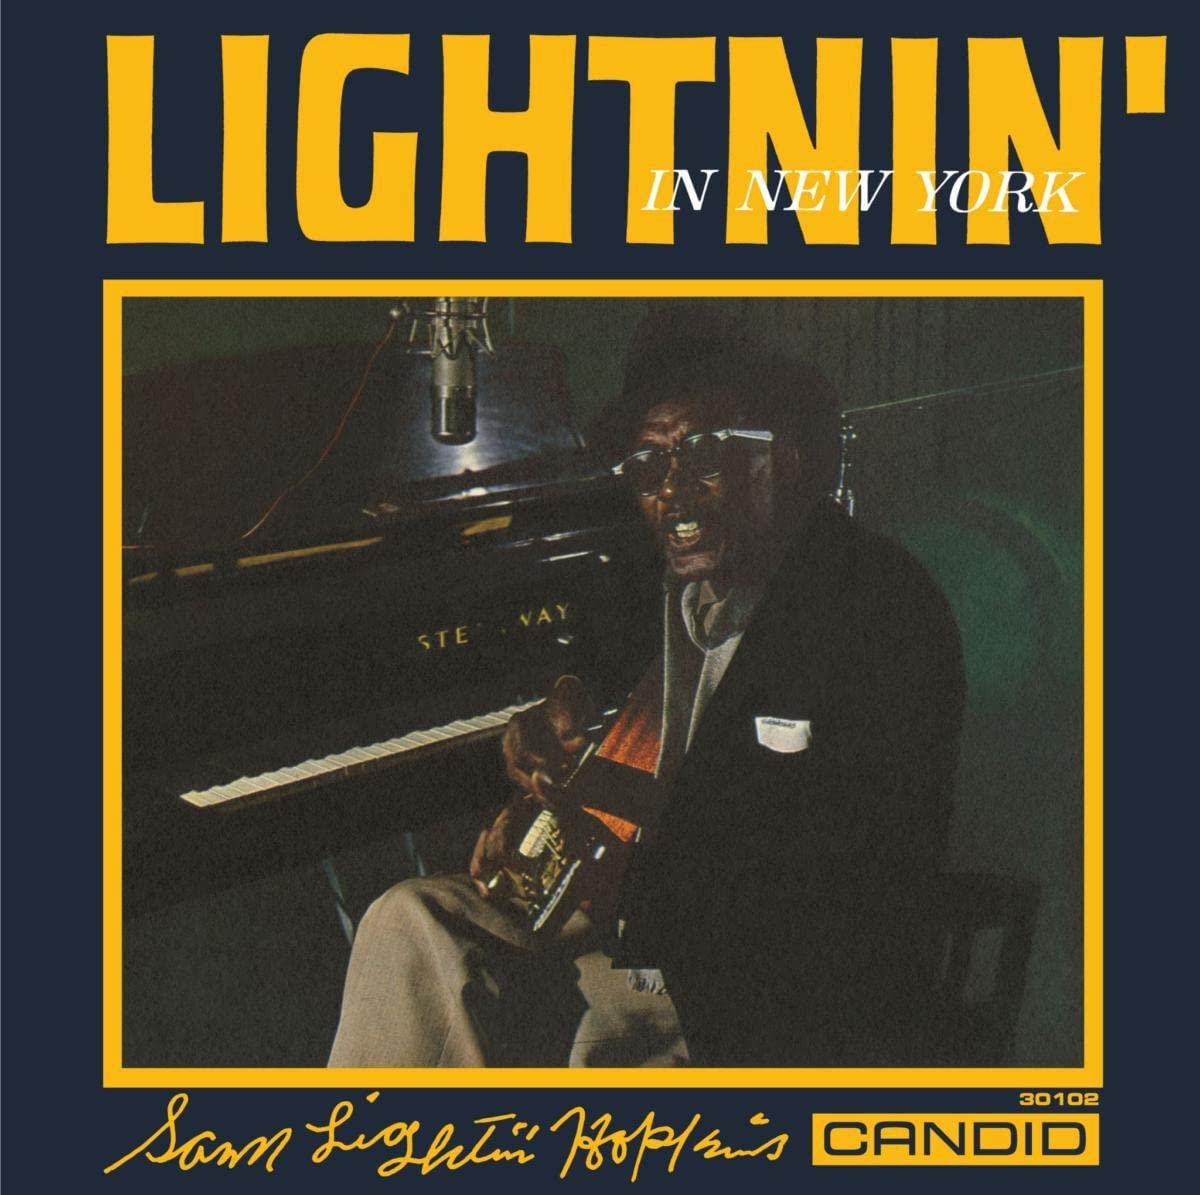 Lightnin' Hopkins - Lightnin' In New York - CD